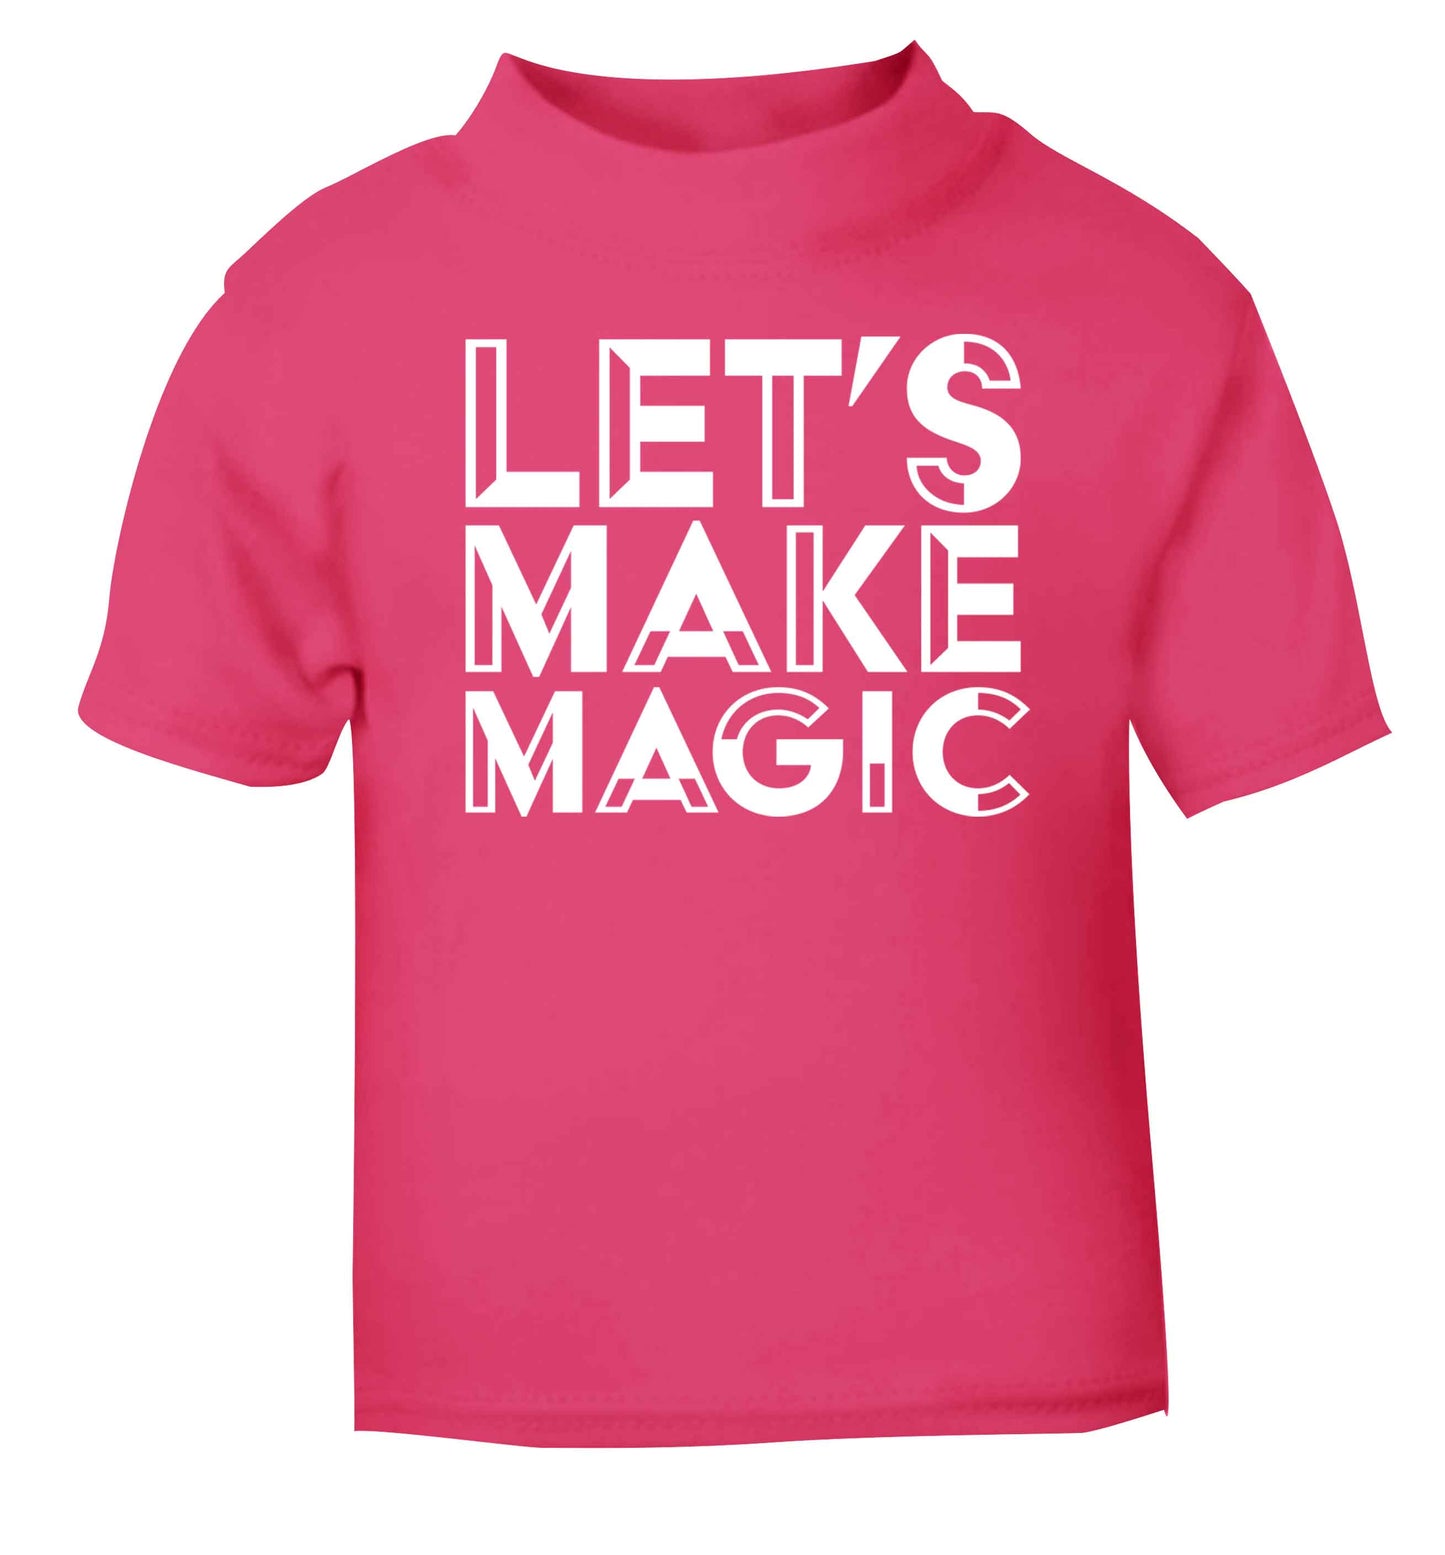 Let's make magic pink baby toddler Tshirt 2 Years